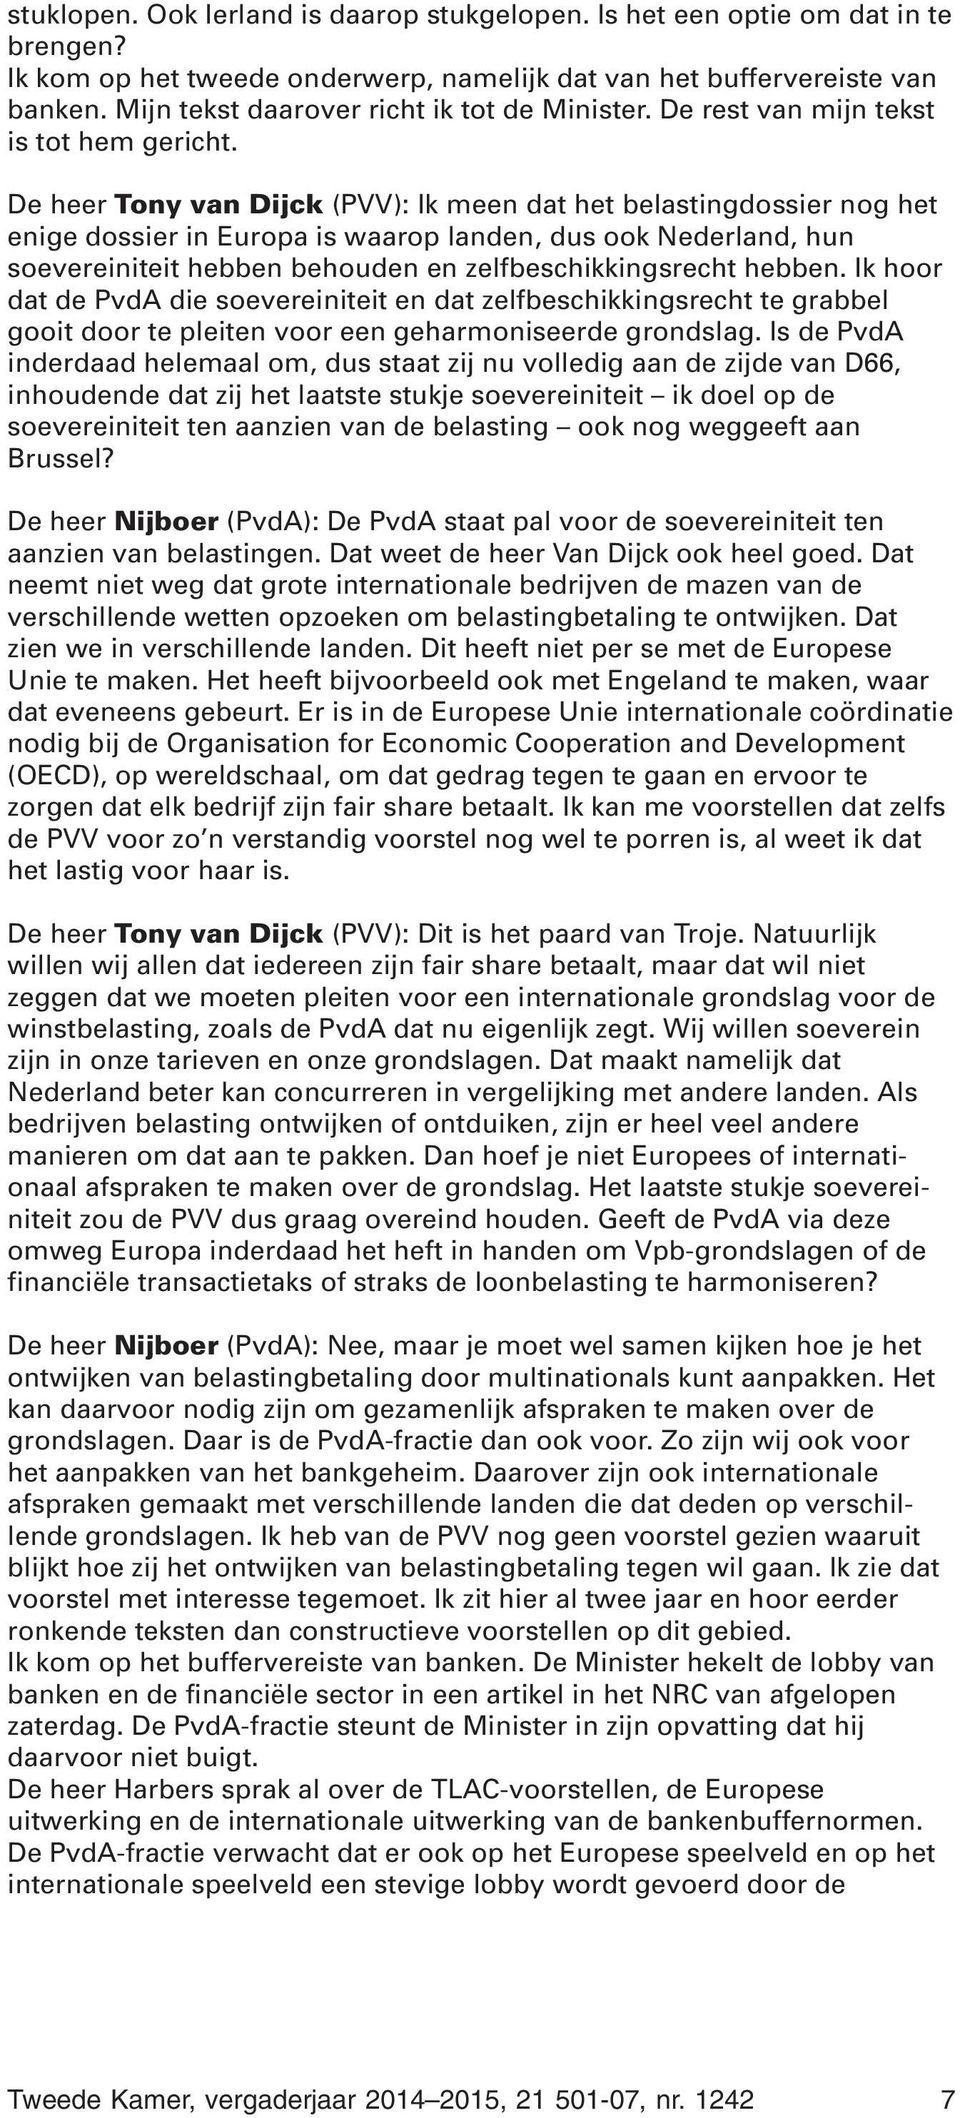 De heer Tony van Dijck (PVV): Ik meen dat het belastingdossier nog het enige dossier in Europa is waarop landen, dus ook Nederland, hun soevereiniteit hebben behouden en zelfbeschikkingsrecht hebben.